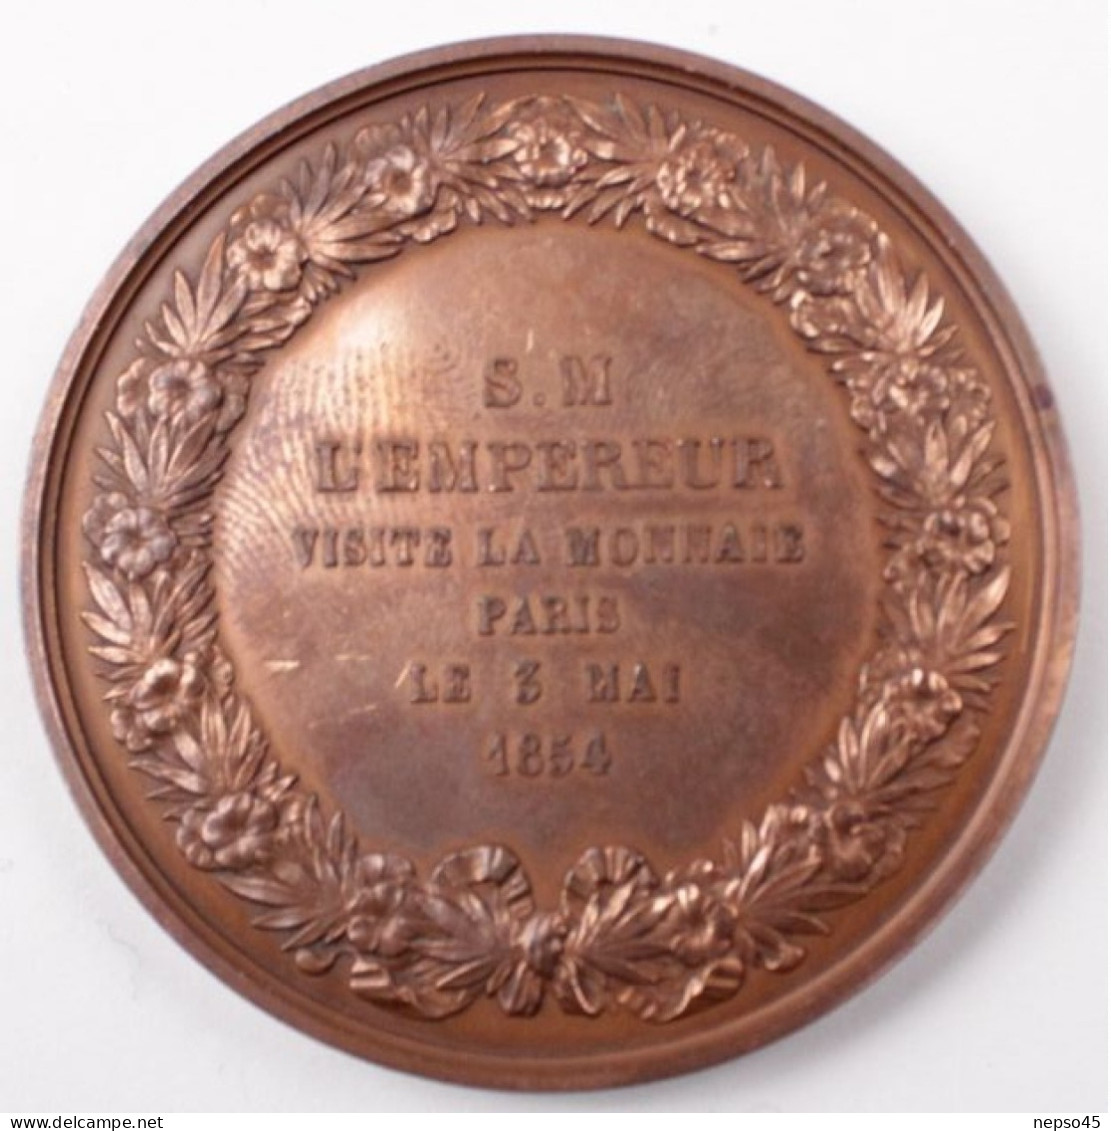 Médaille De Table Commémorative.Bronze.Empereur Napoléon III Visite La Monnaie.Paris 3 Mai 1854. - Adel